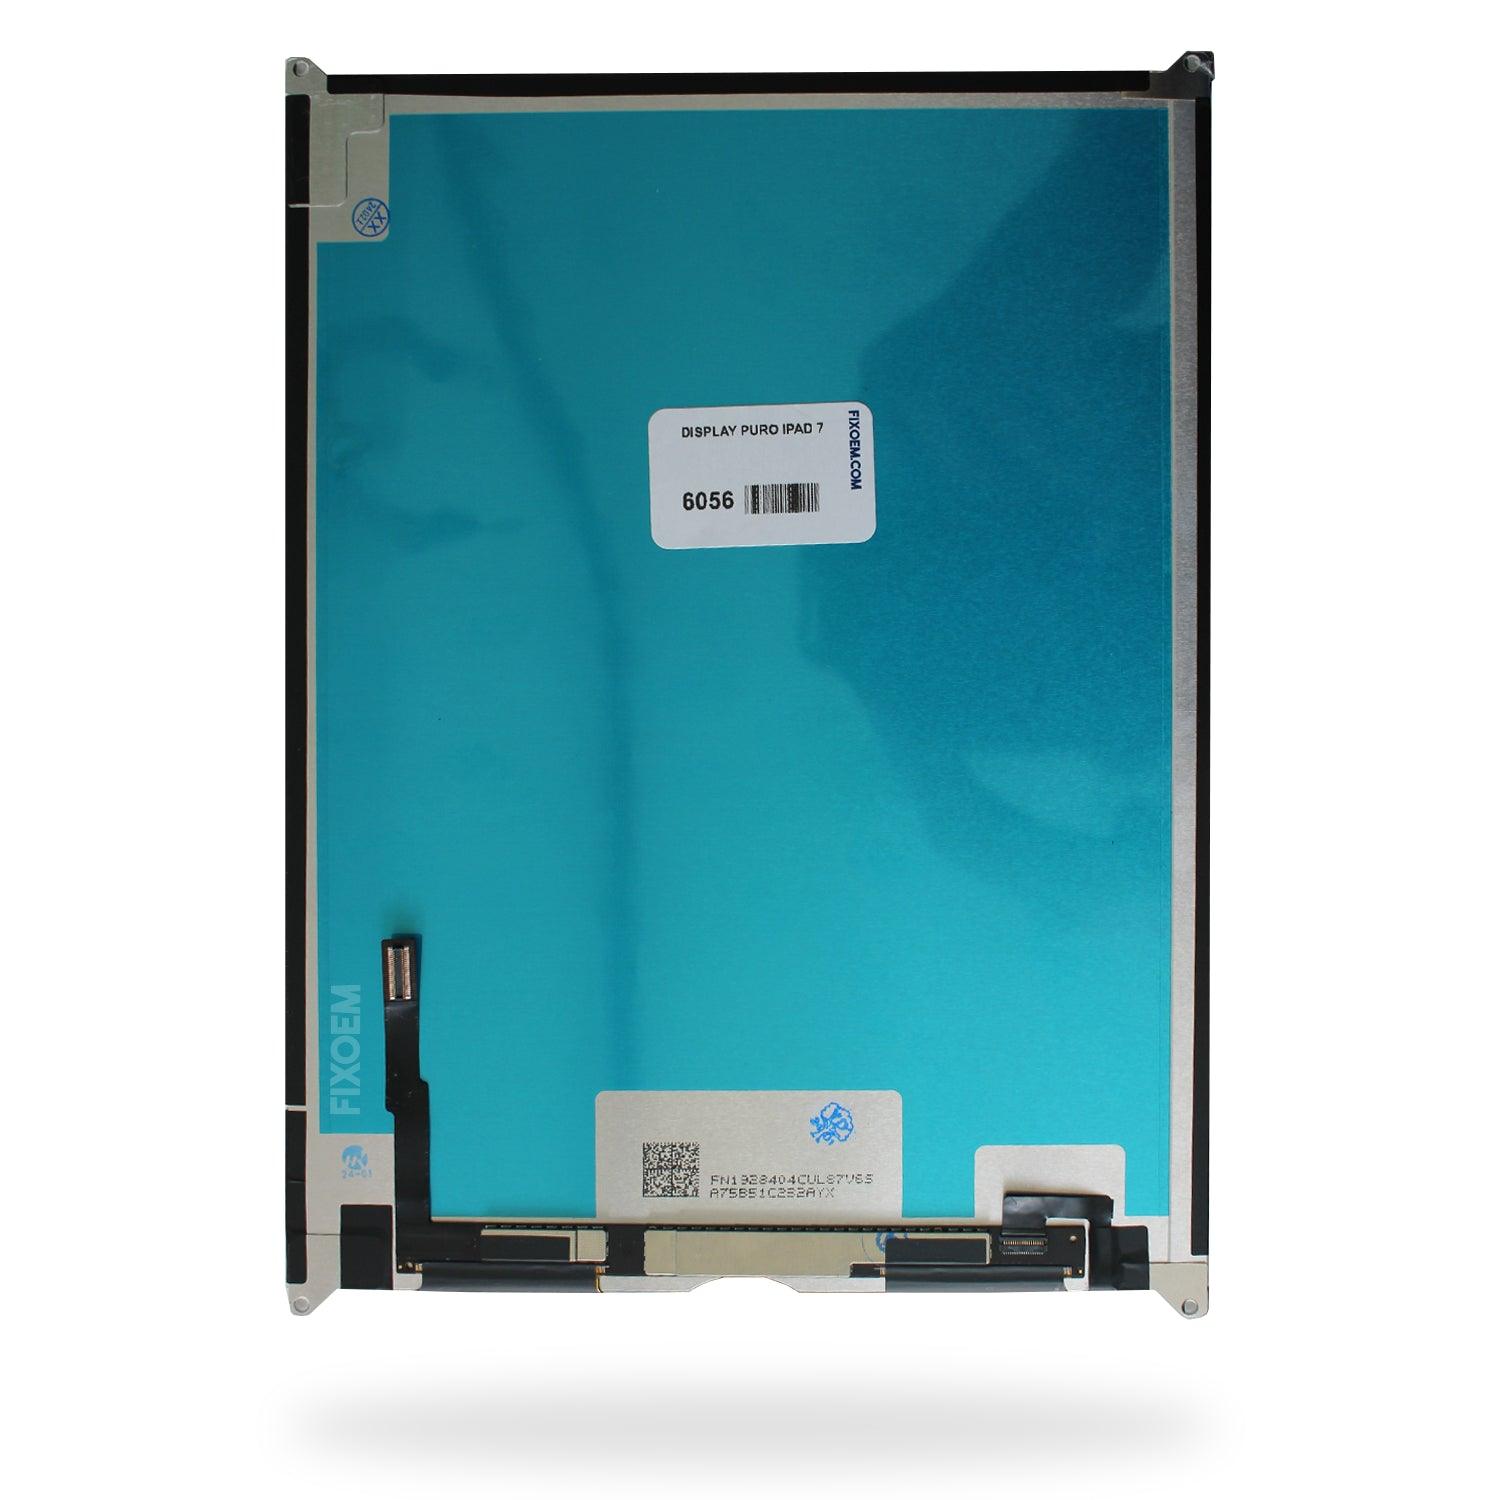 Display Puro iPad 7 / iPad 8 a solo $ 1190.00 Refaccion y puestos celulares, refurbish y microelectronica.- FixOEM